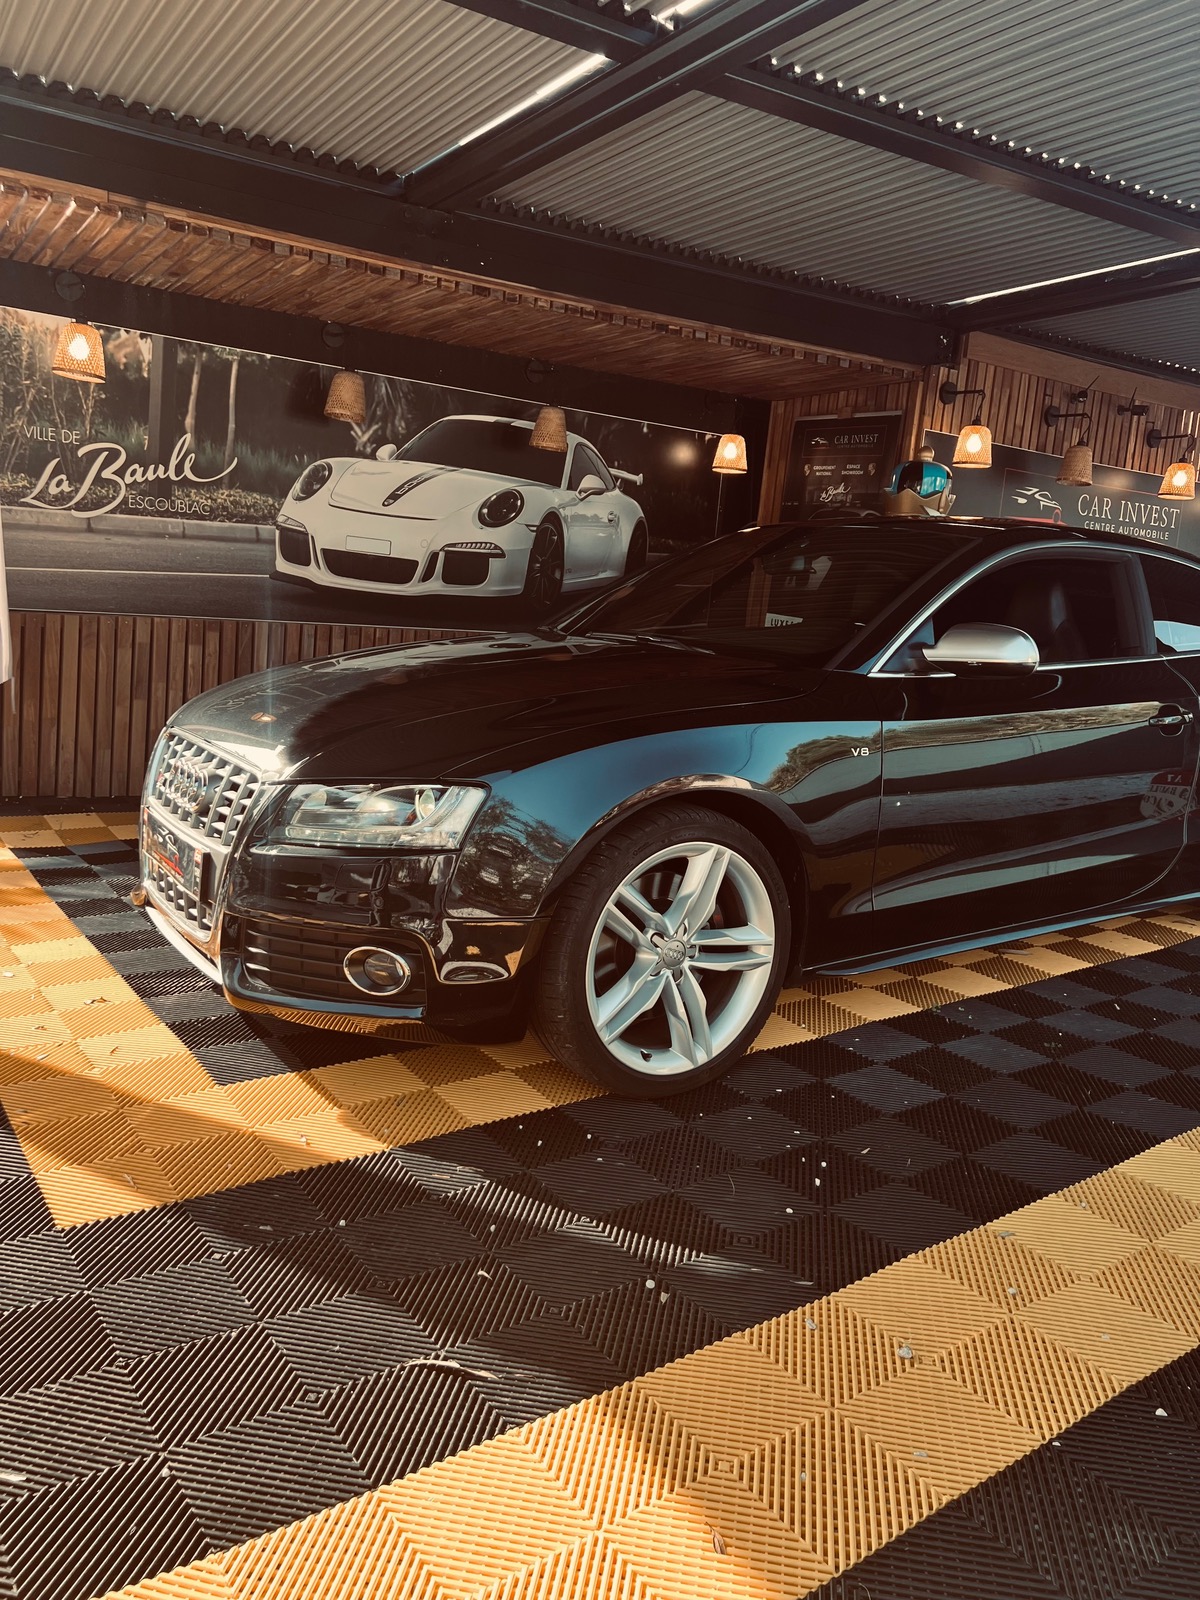 Audi S5 4.2 fsiq état superbe ✅